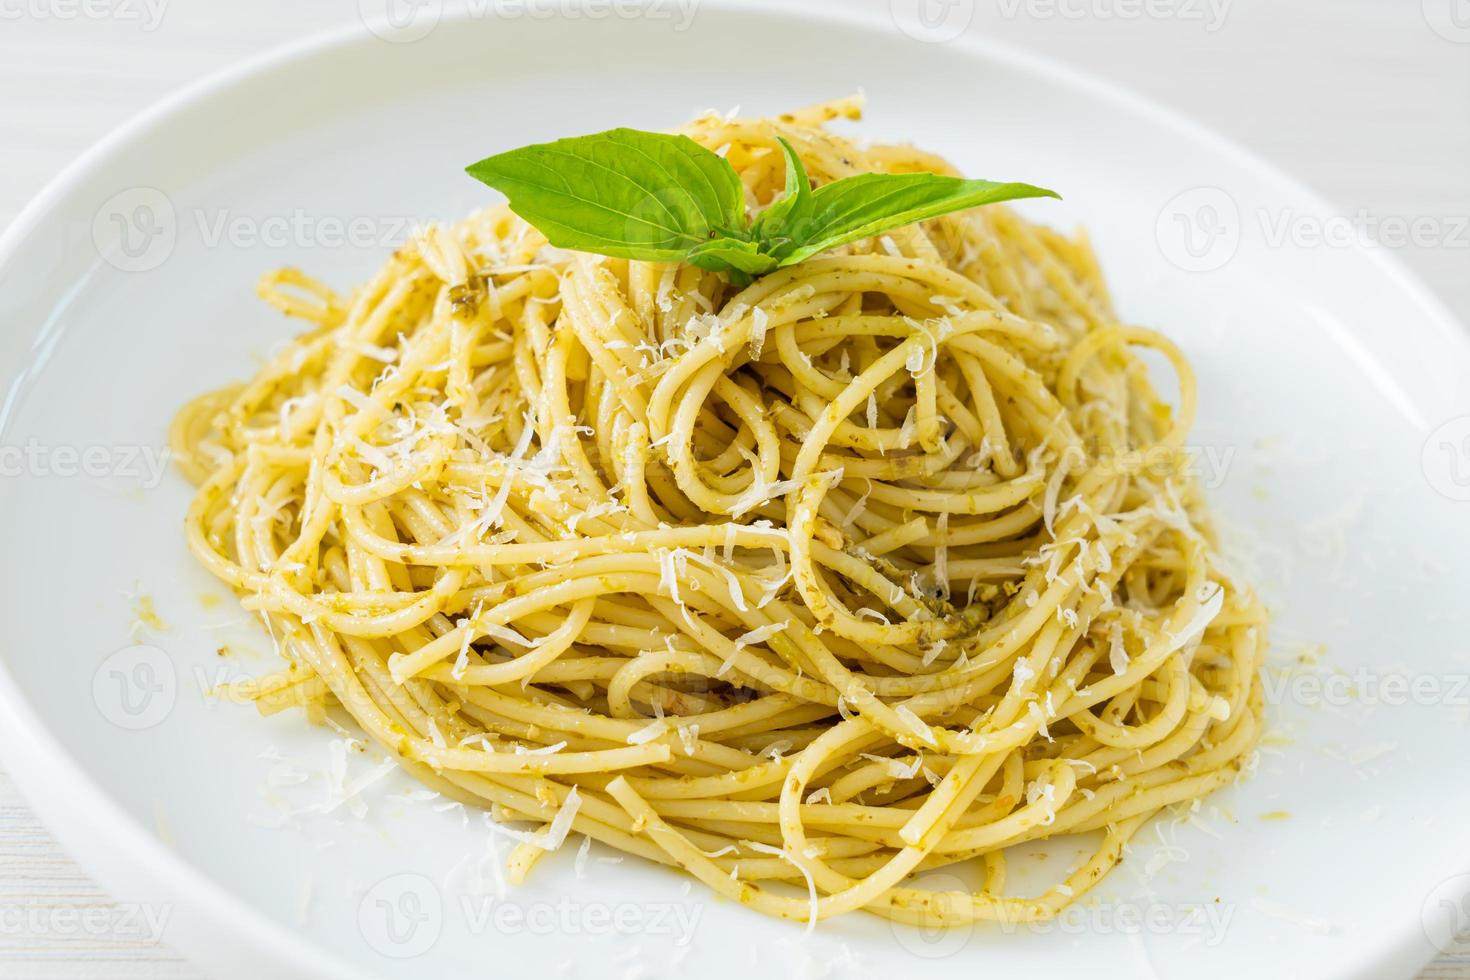 pasta de espagueti al pesto - comida vegetariana y estilo de comida italiana foto